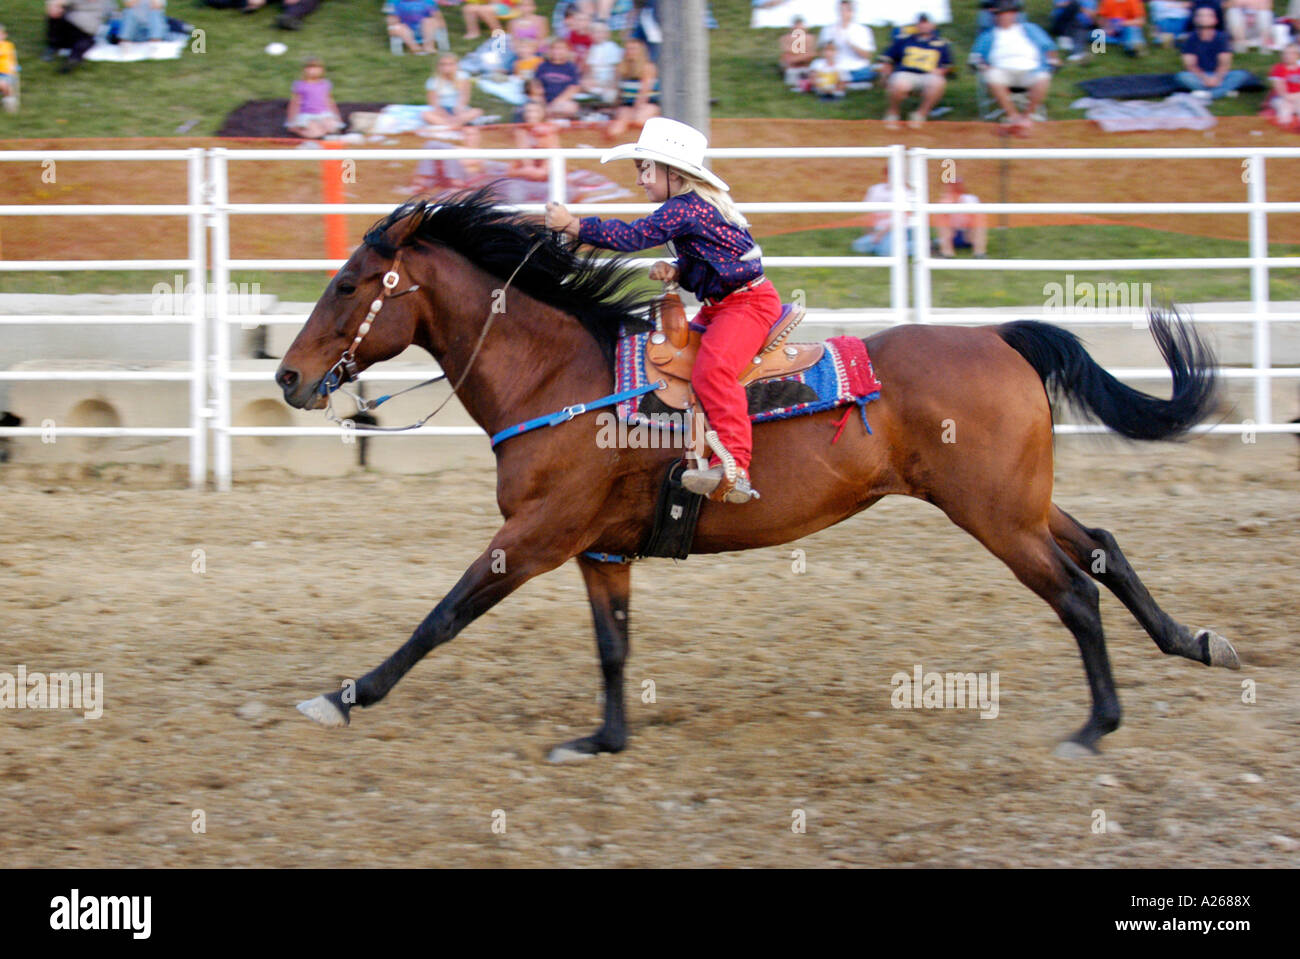 Cowboys konkurrieren in Rodeo Aktion Stockfoto